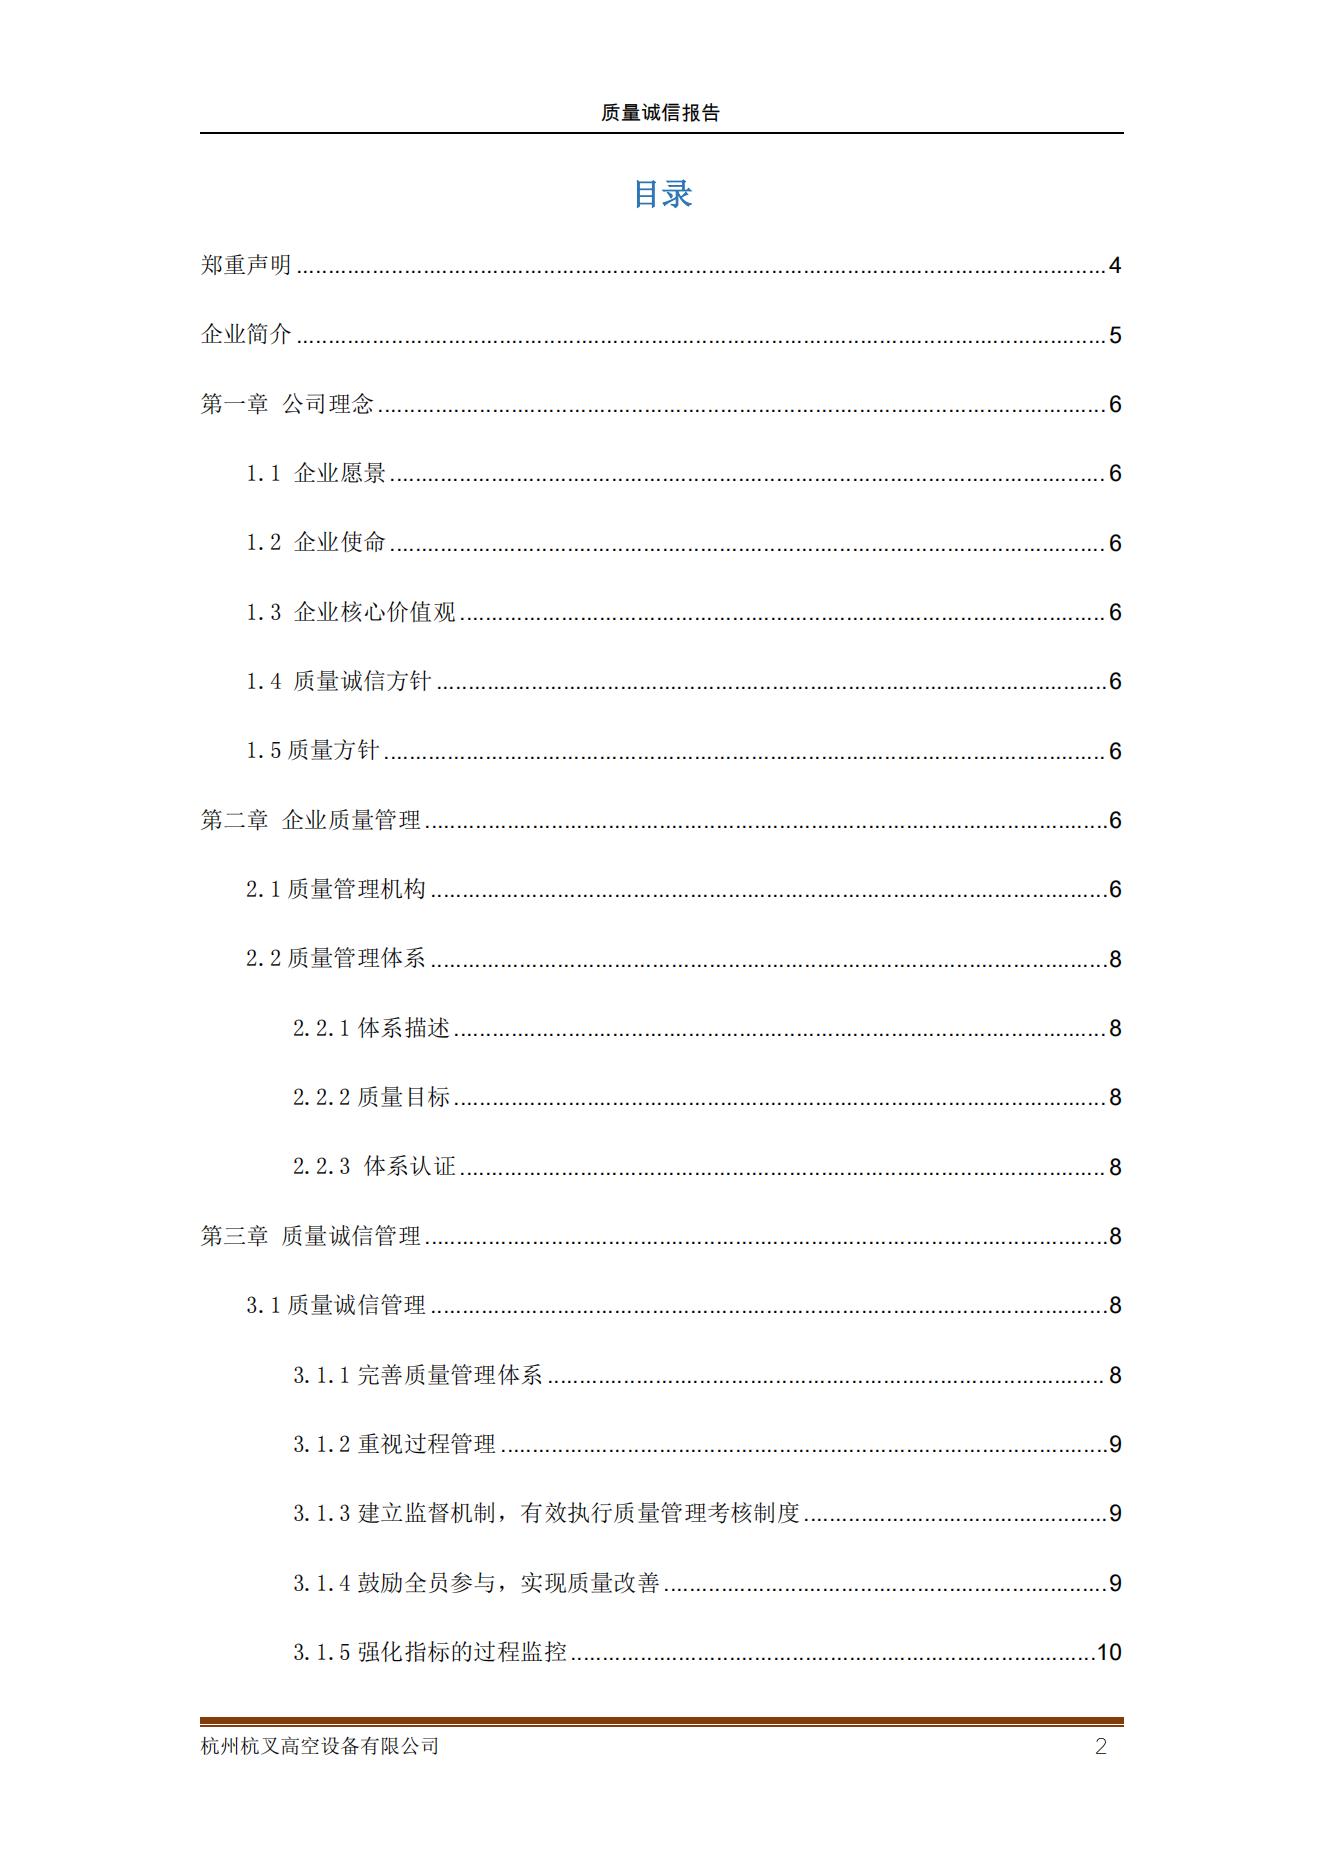 杭州杭叉高空設備公司2021年質量誠信報告(圖2)